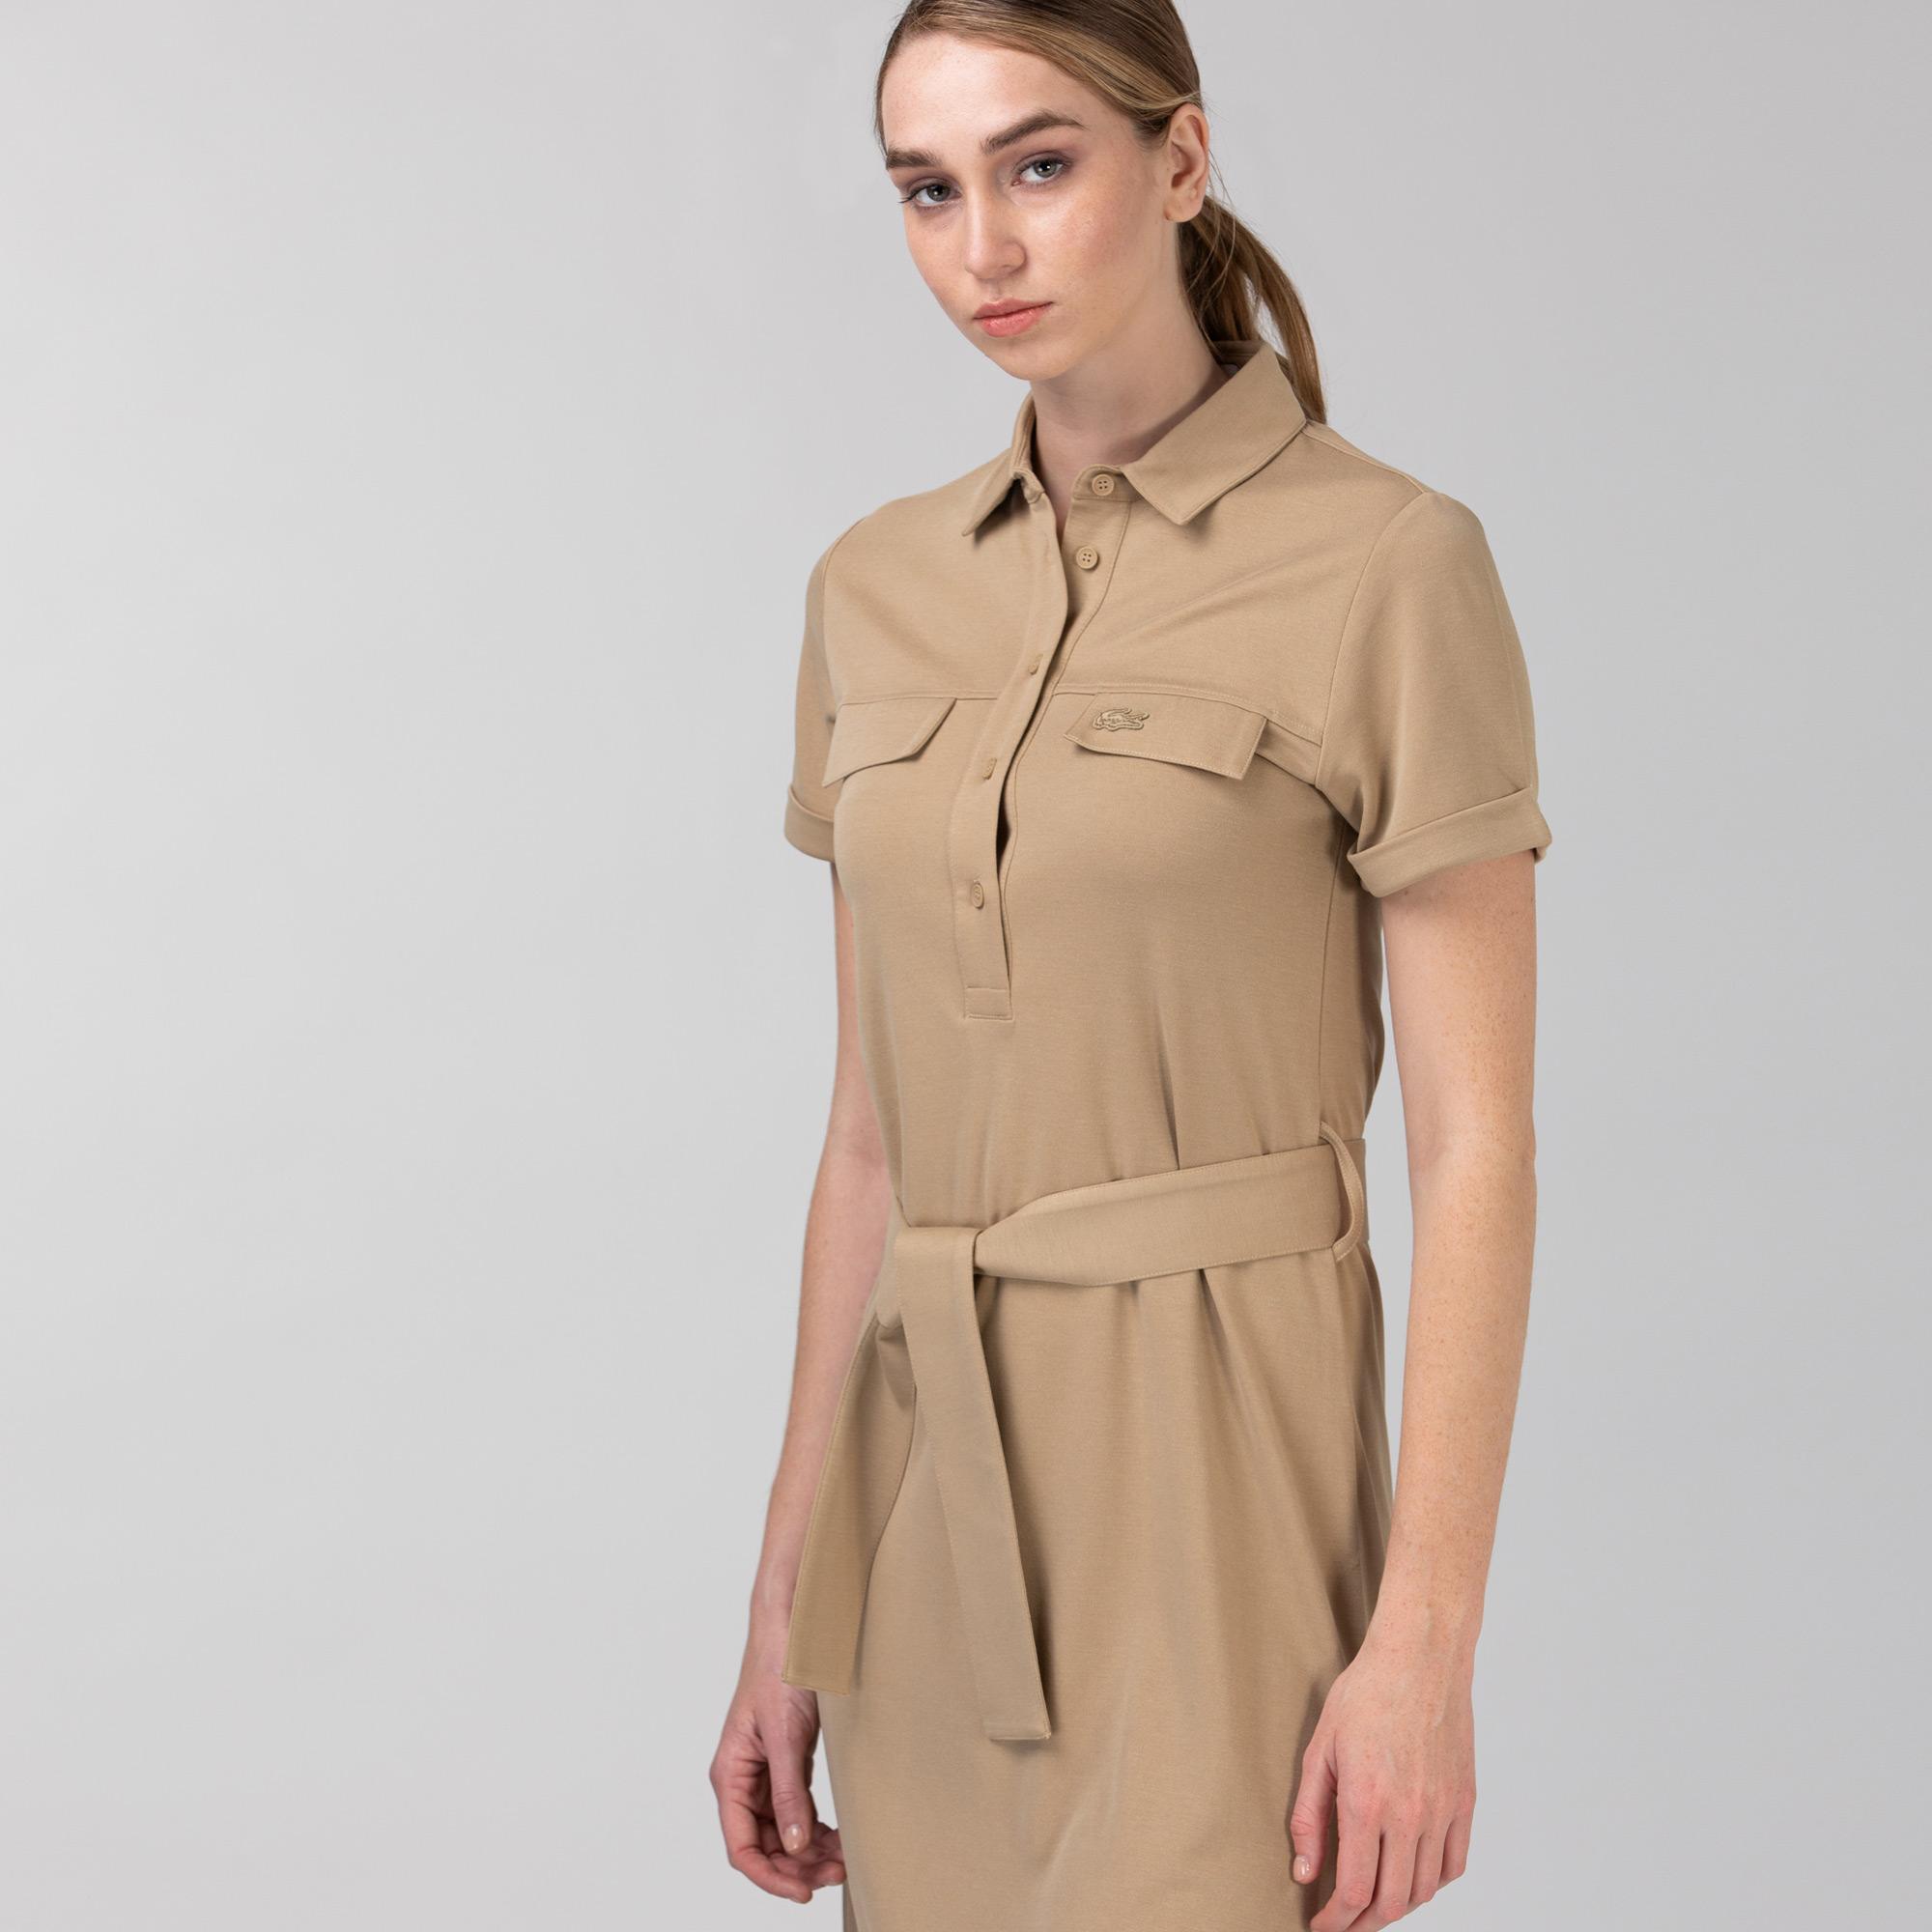 Lacoste Kadın Kısa Kollu Gömlek Yaka Açık Kahverengi Elbise. 2